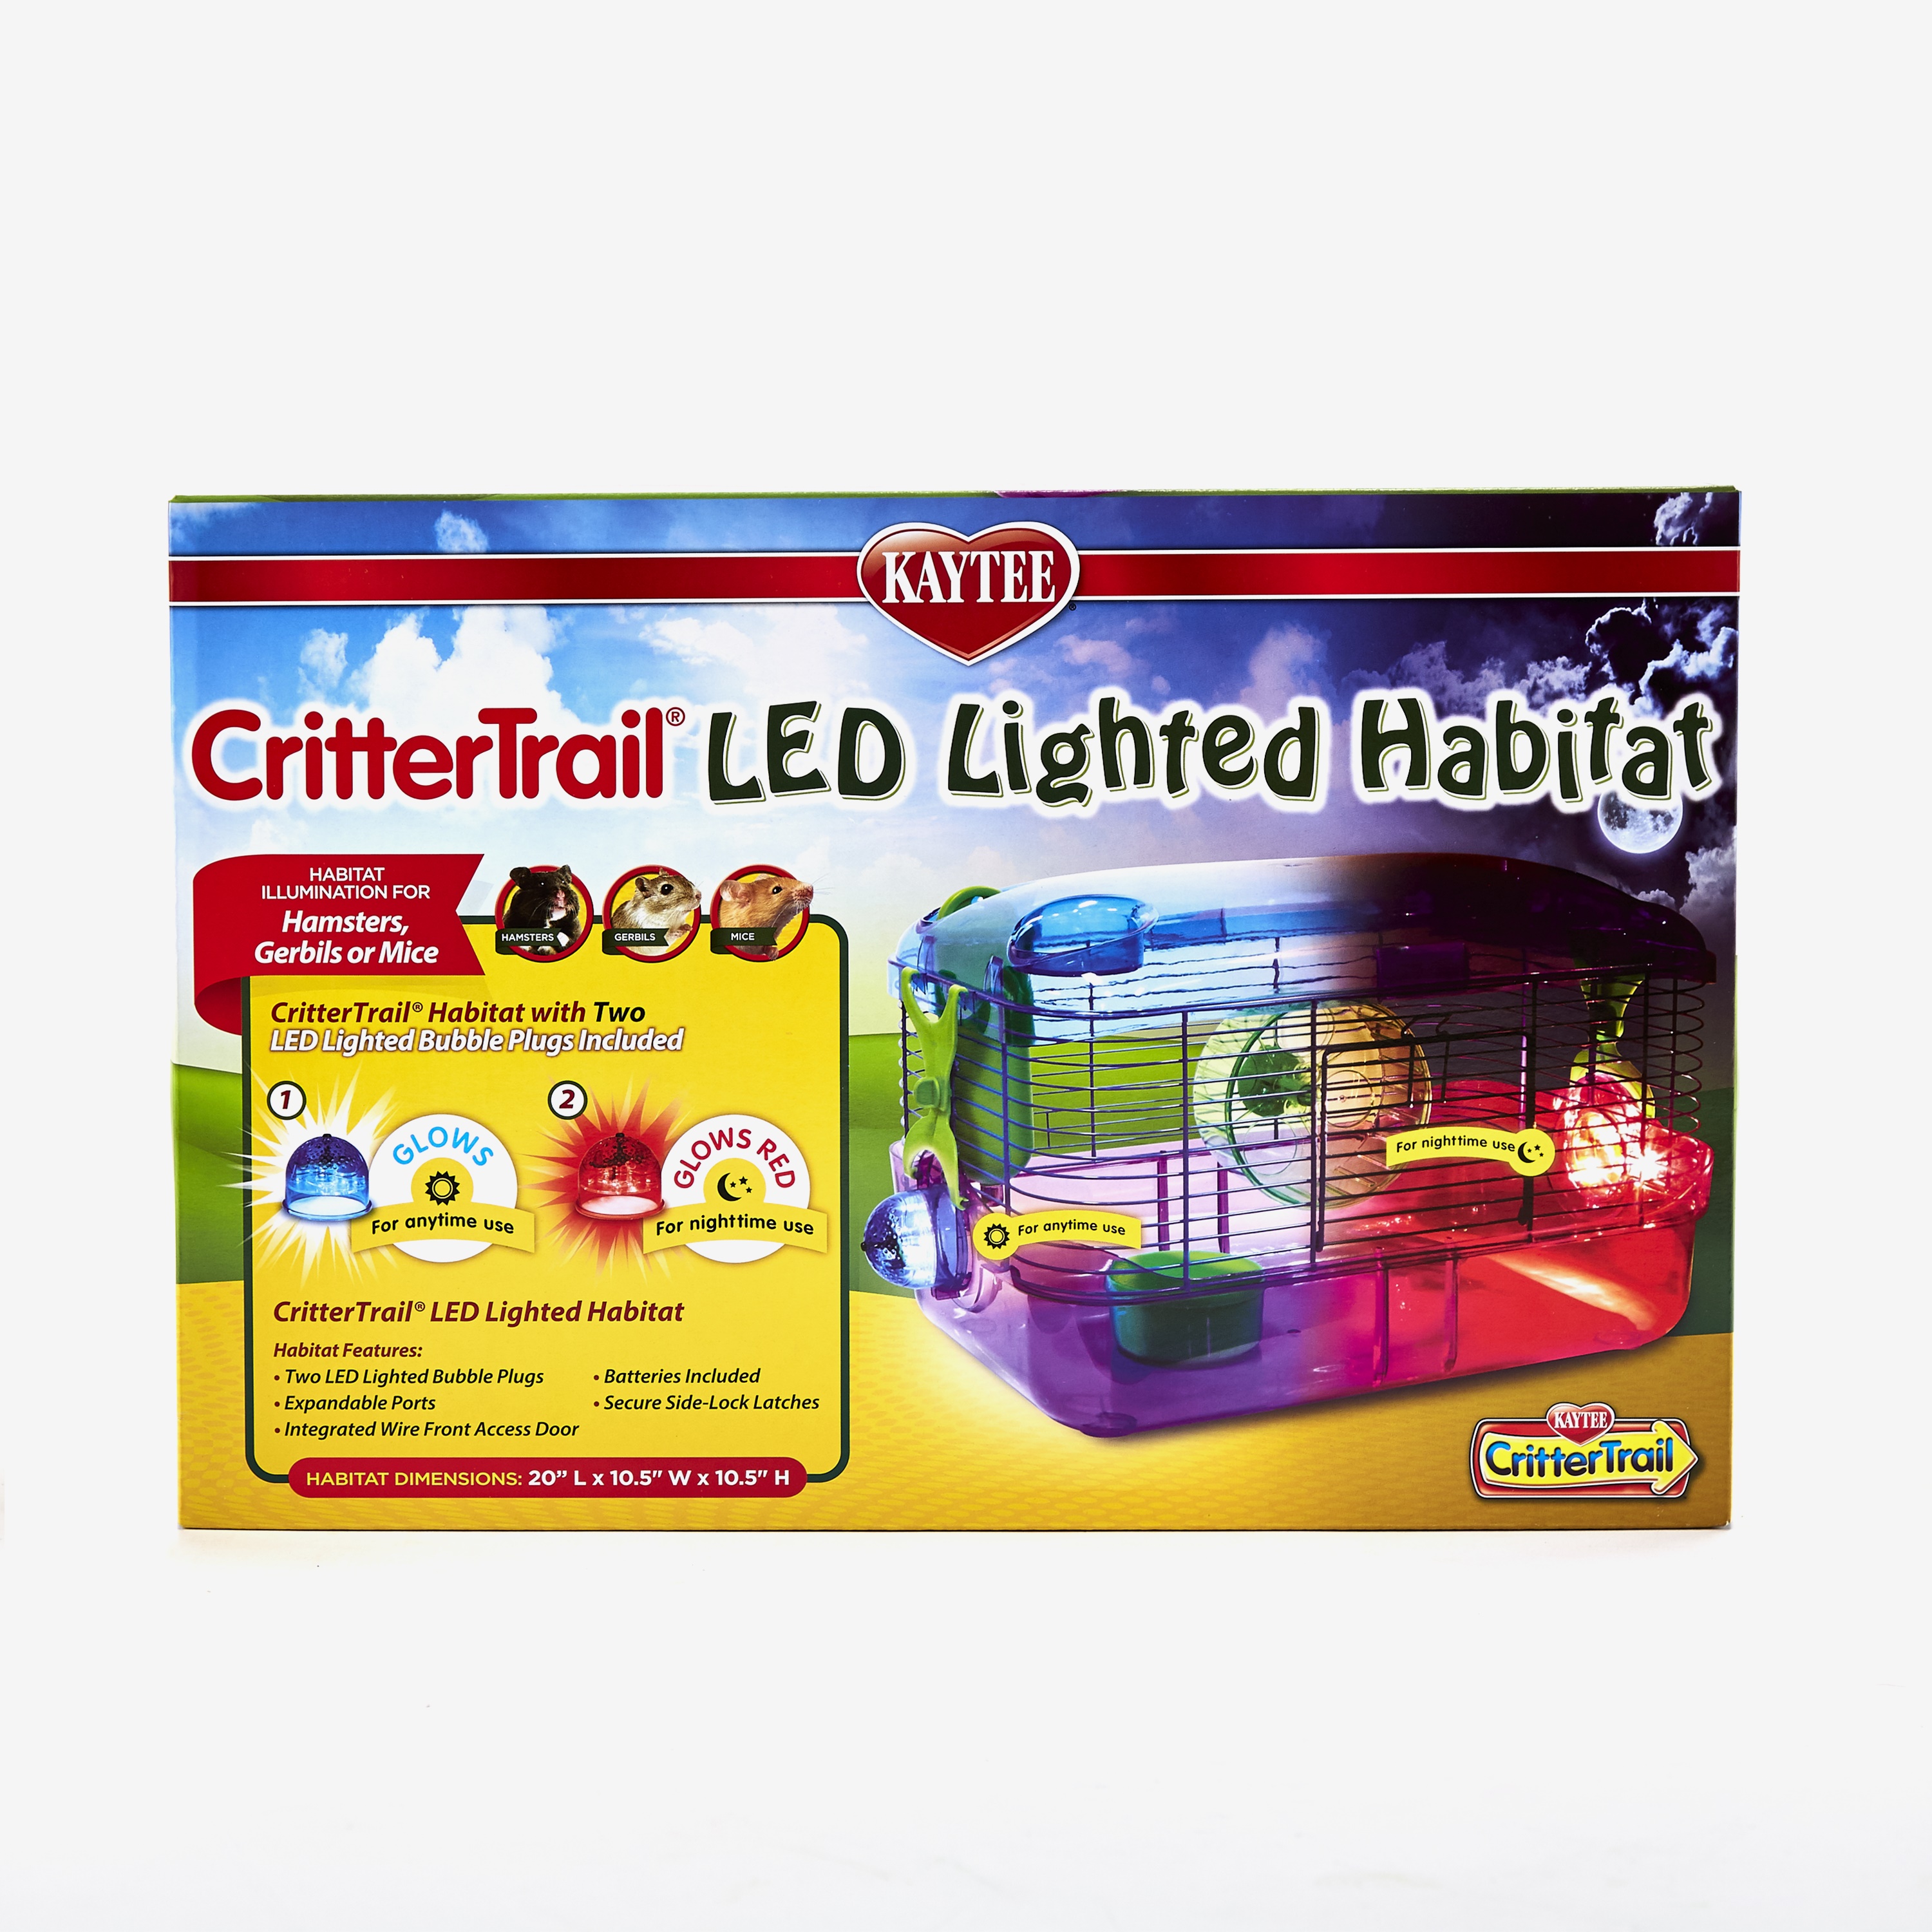 Crittertrail LED Lighted Habitat